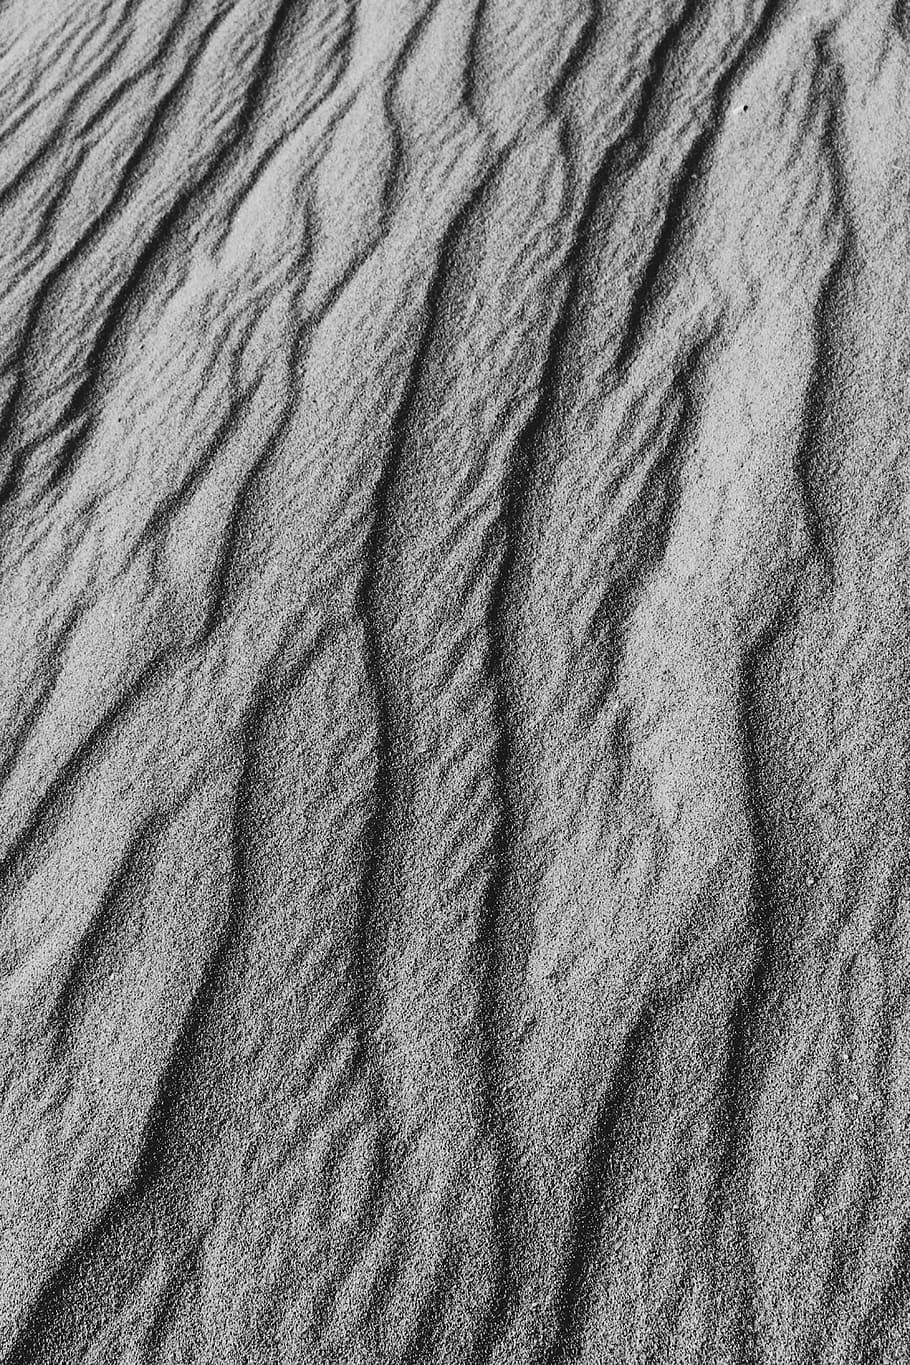 gray sand, texture, grain, nature, landscape, curve, line, white